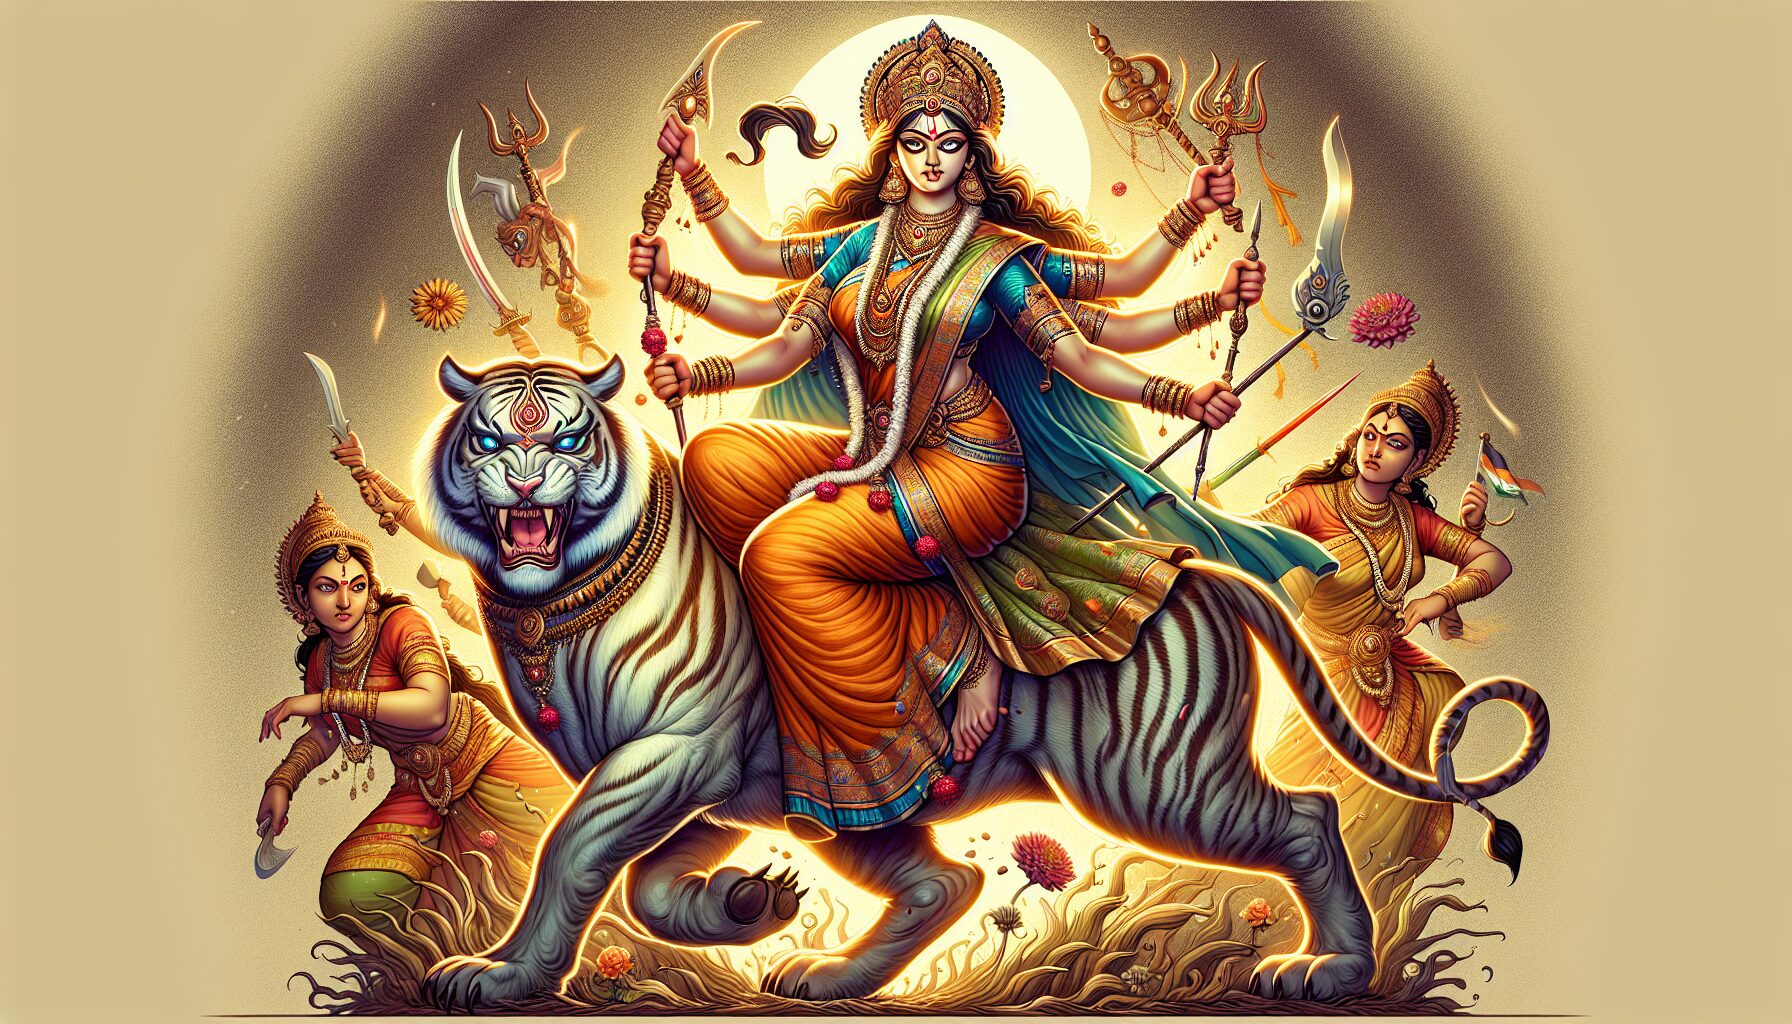 How Did Durga Become Mahisasura Mardini?